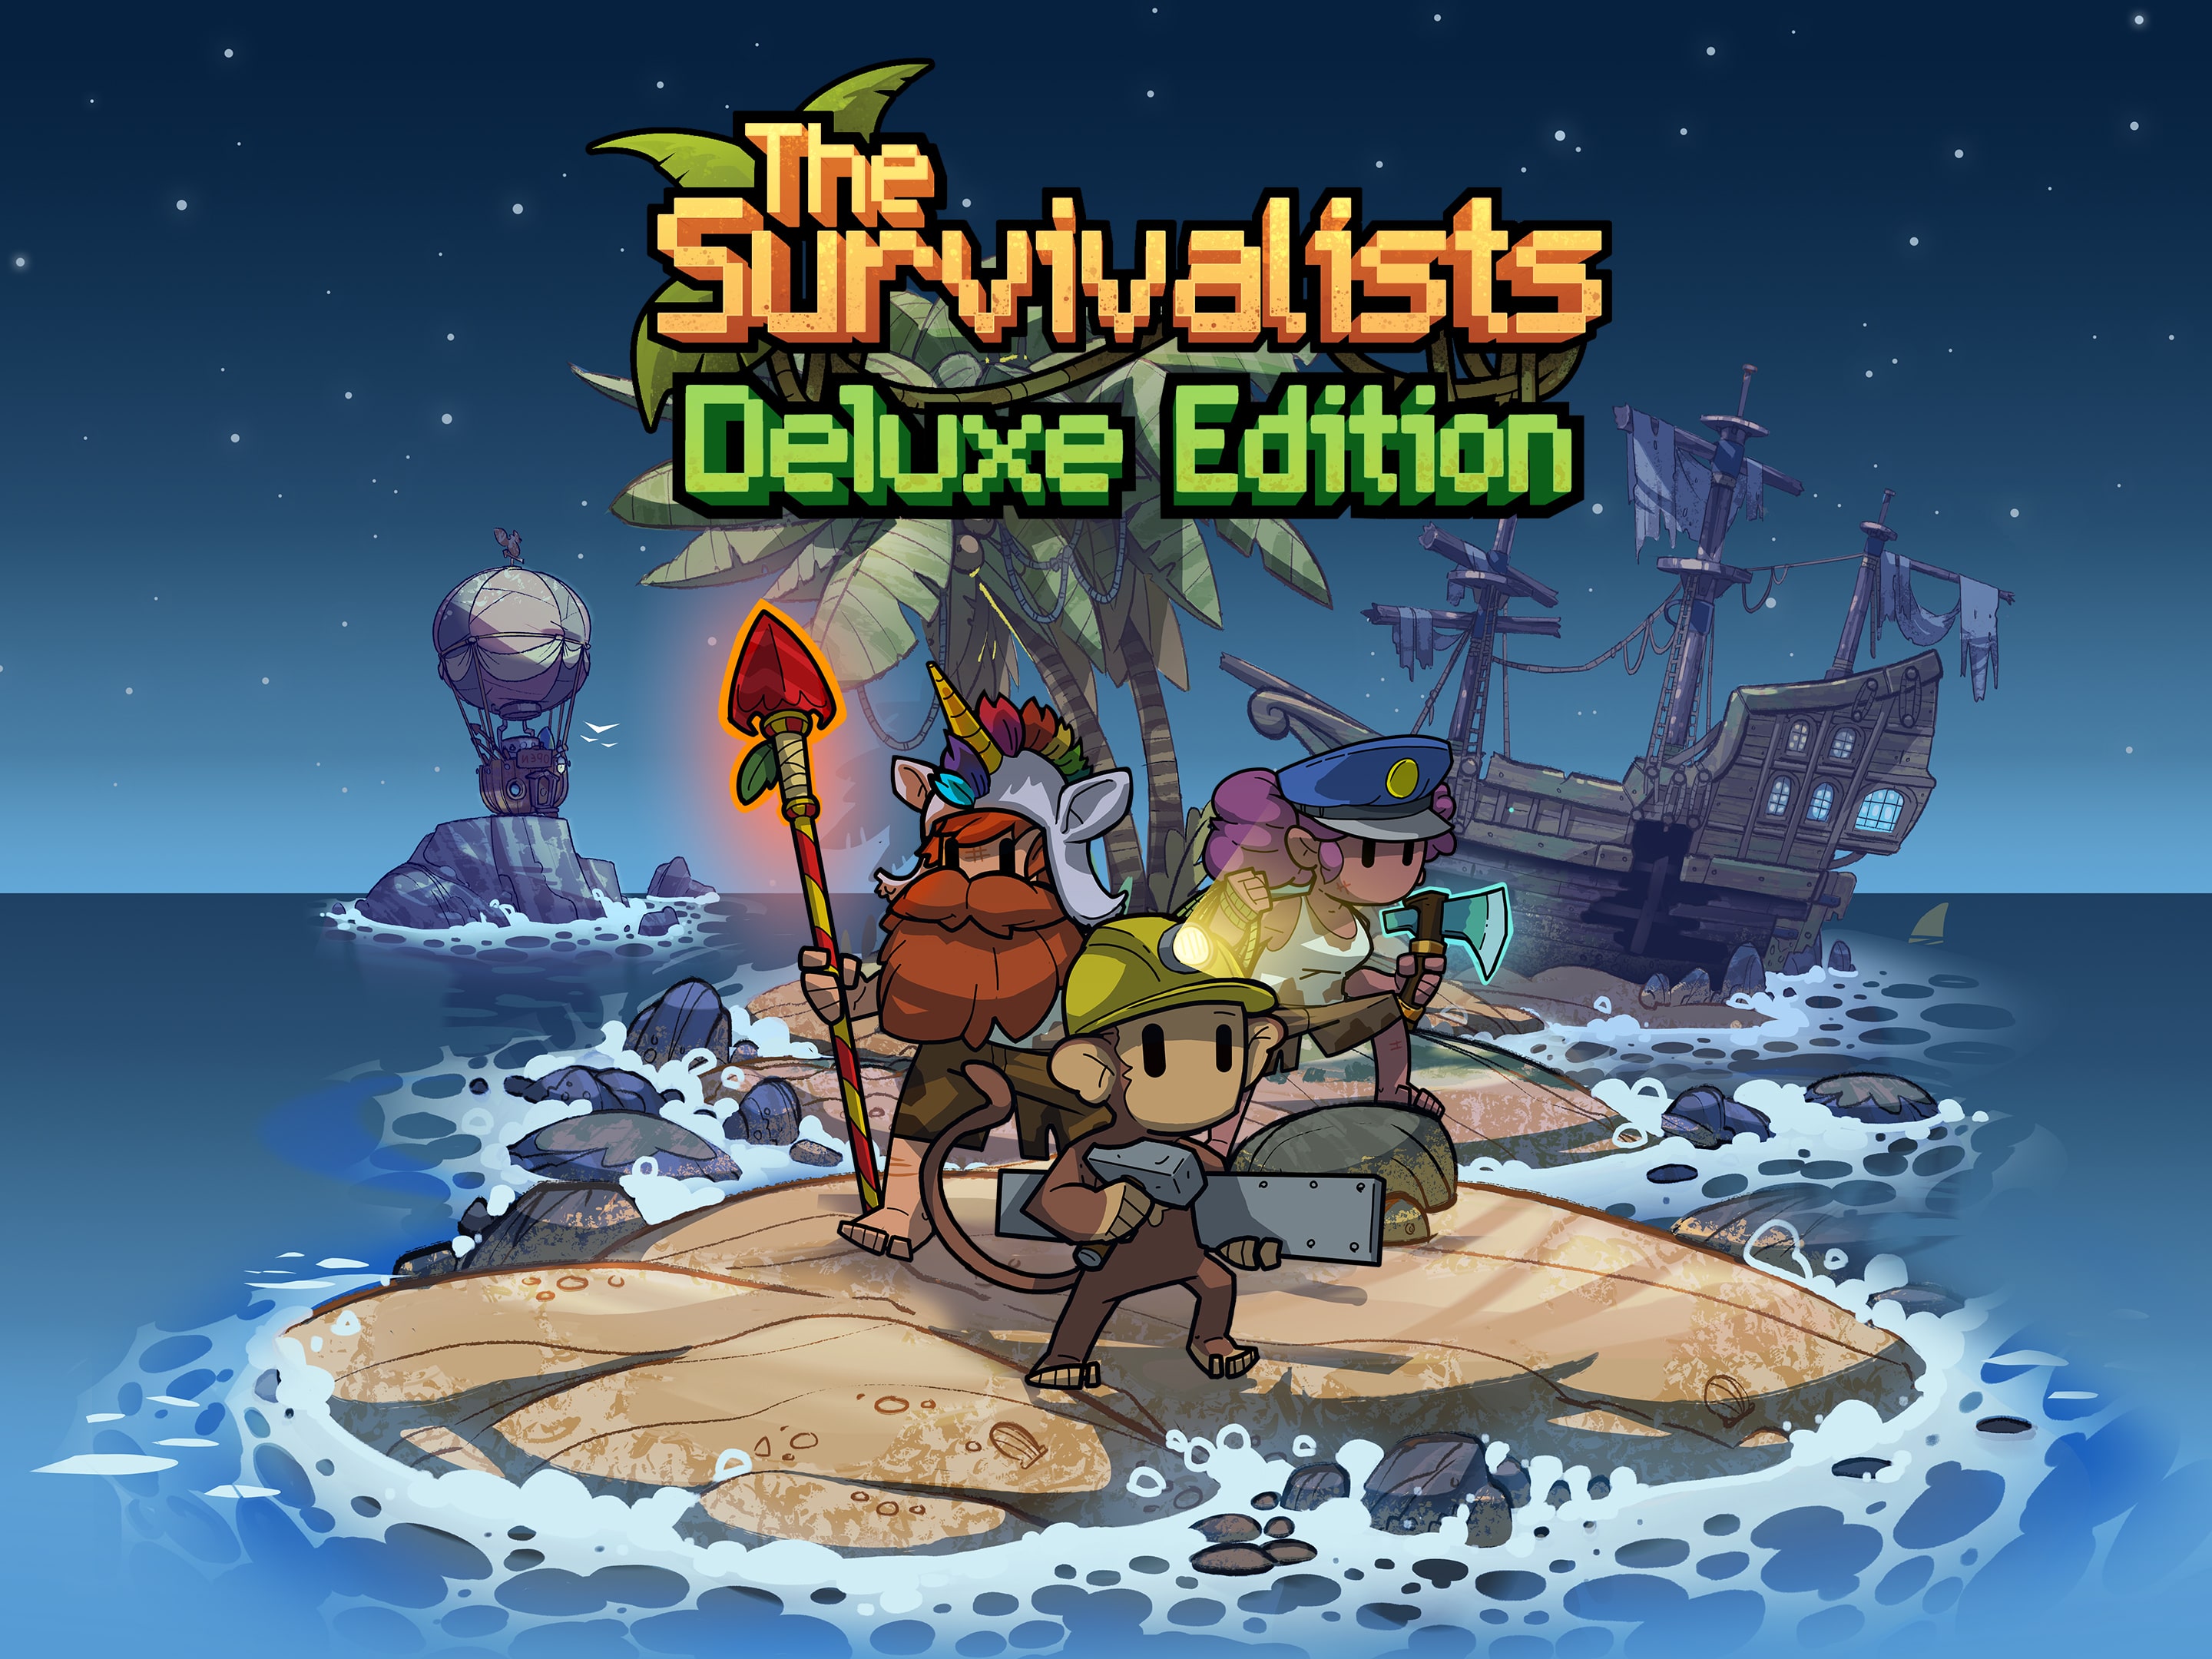 Review - The Survivalists - O Melhor jogo de Sobrevivência em 2d da Geração